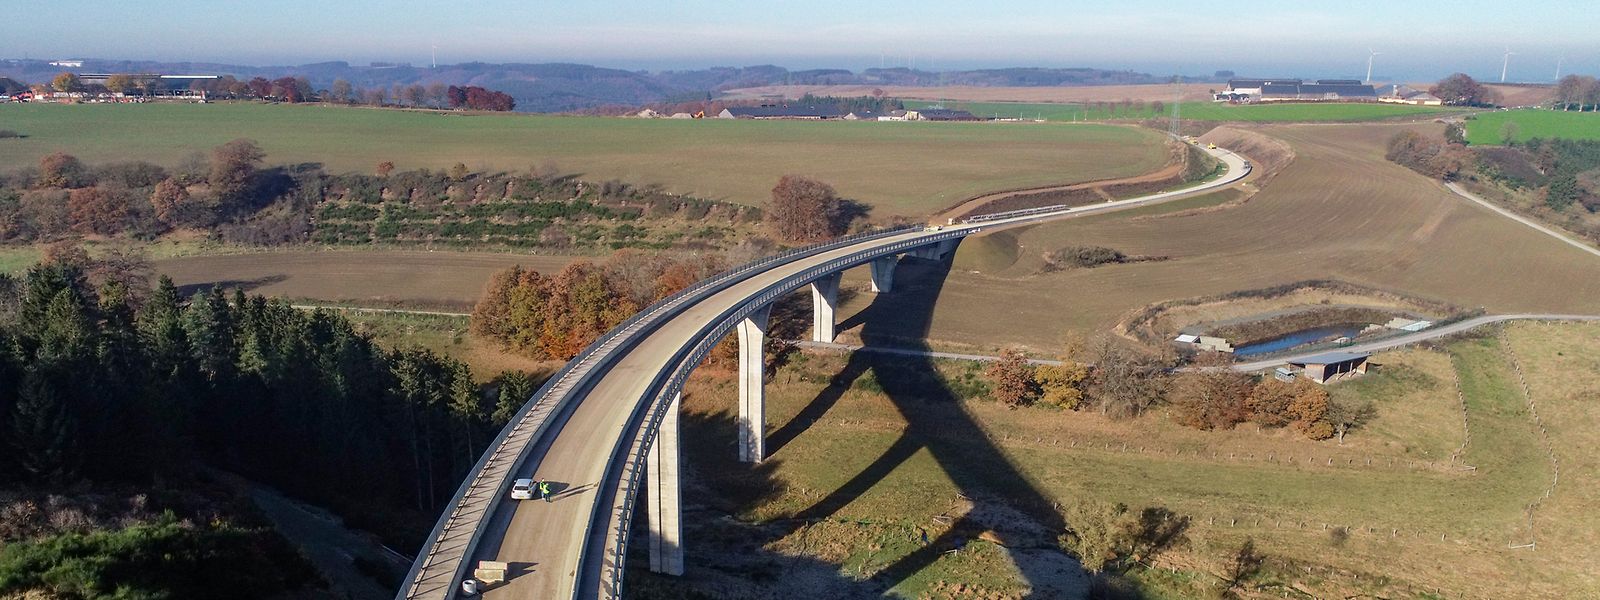 Der Viadukt Irbich ist 265 Meter lang und durchschnittlich 30 Meter hoch. 